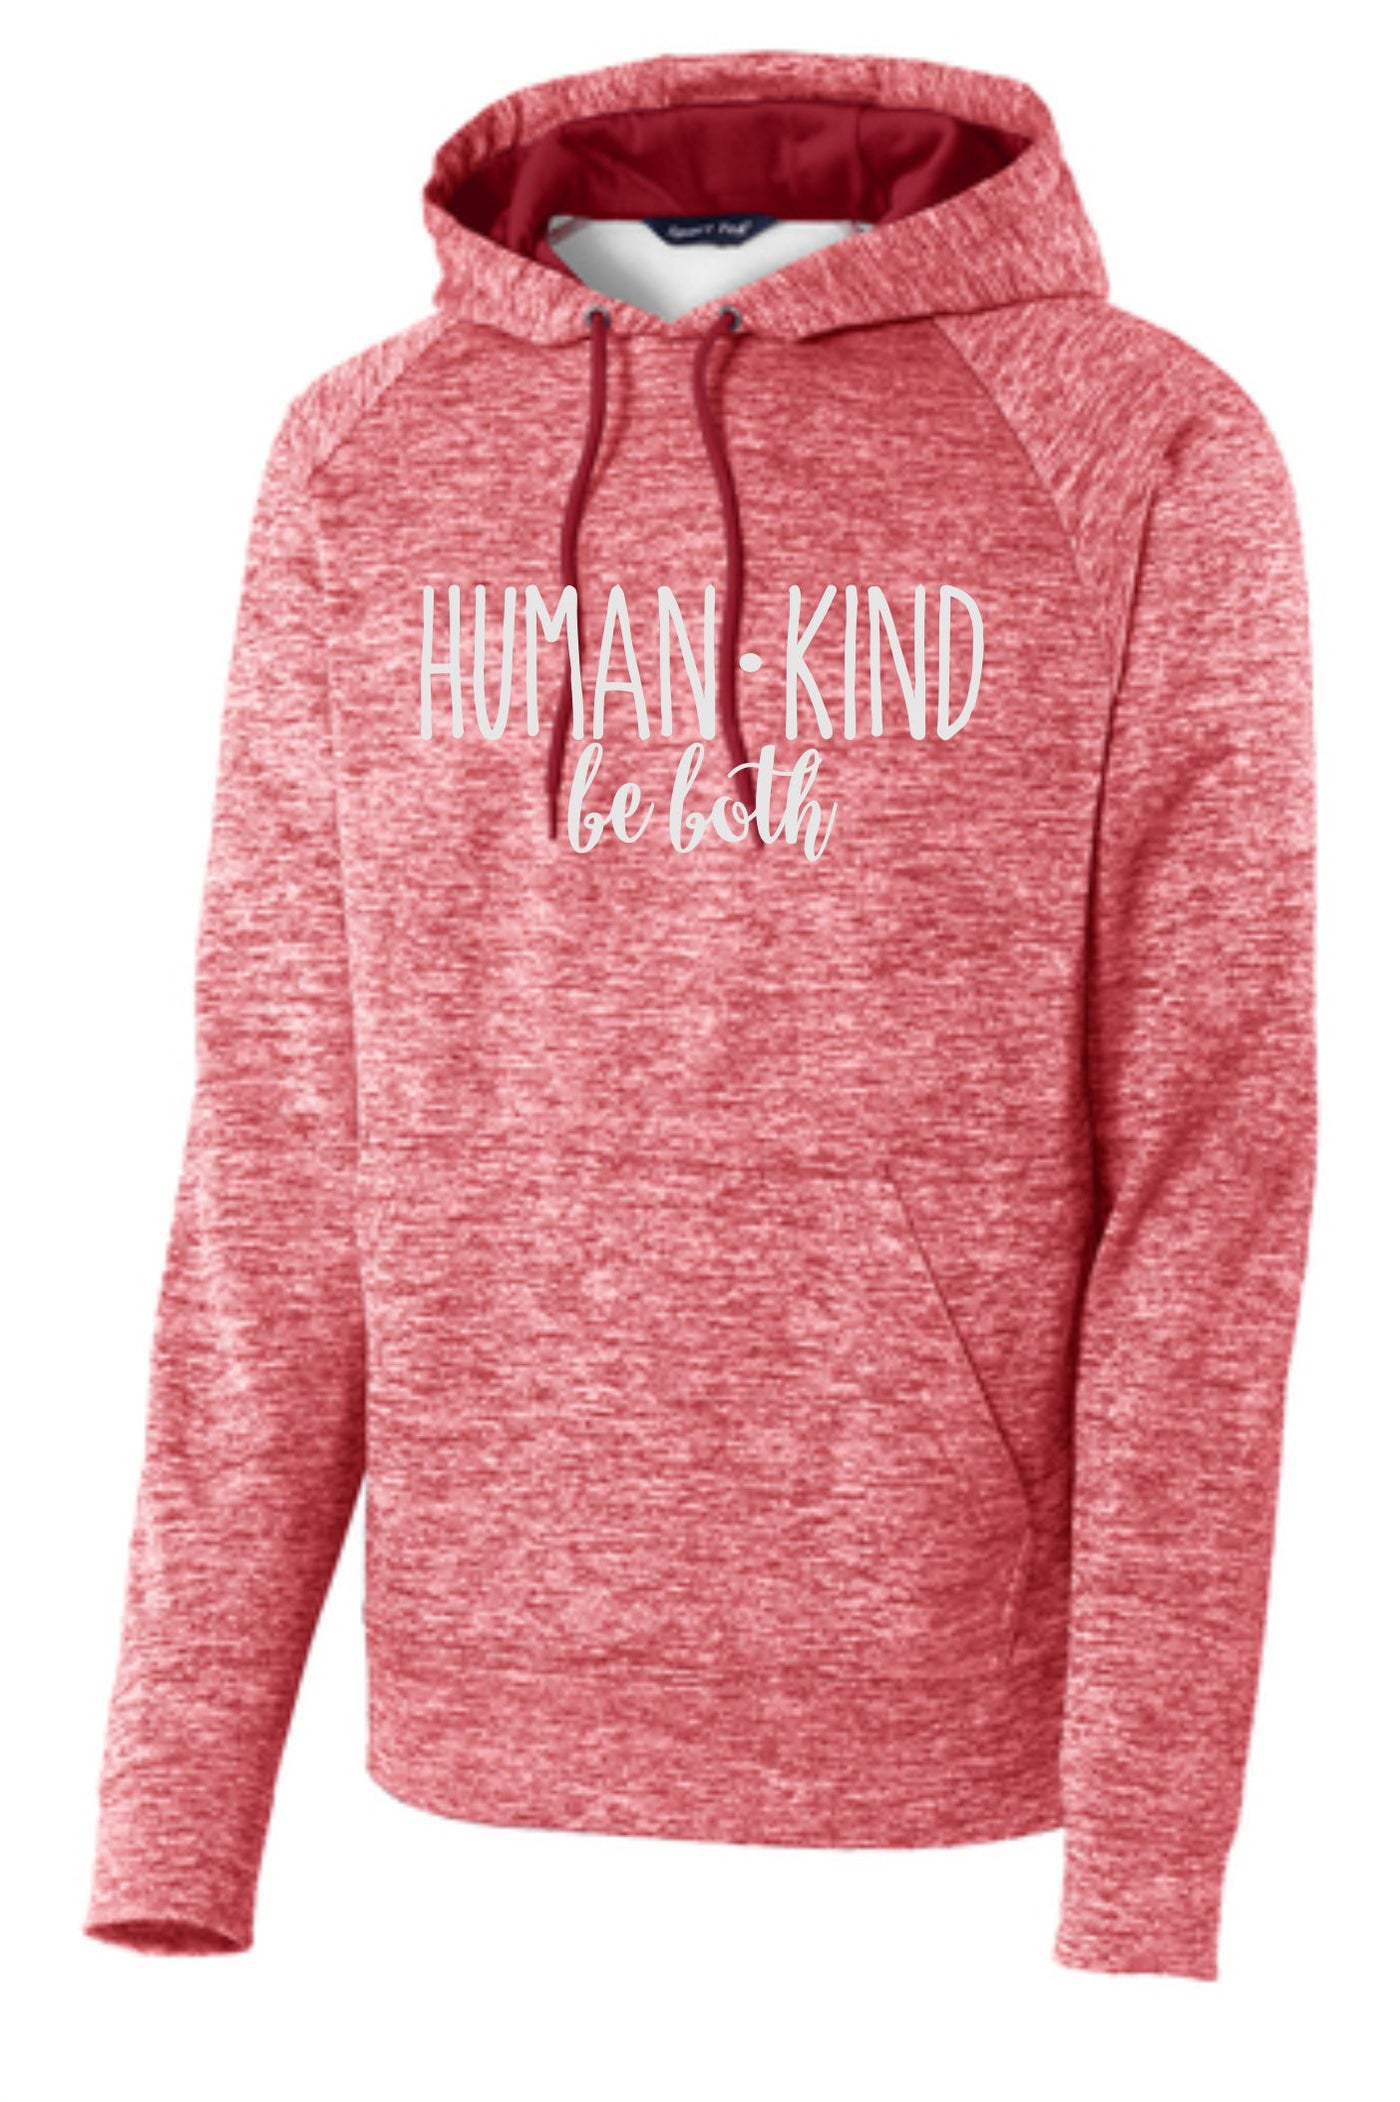 Human Kind Be Both Hooded Sweatshirt